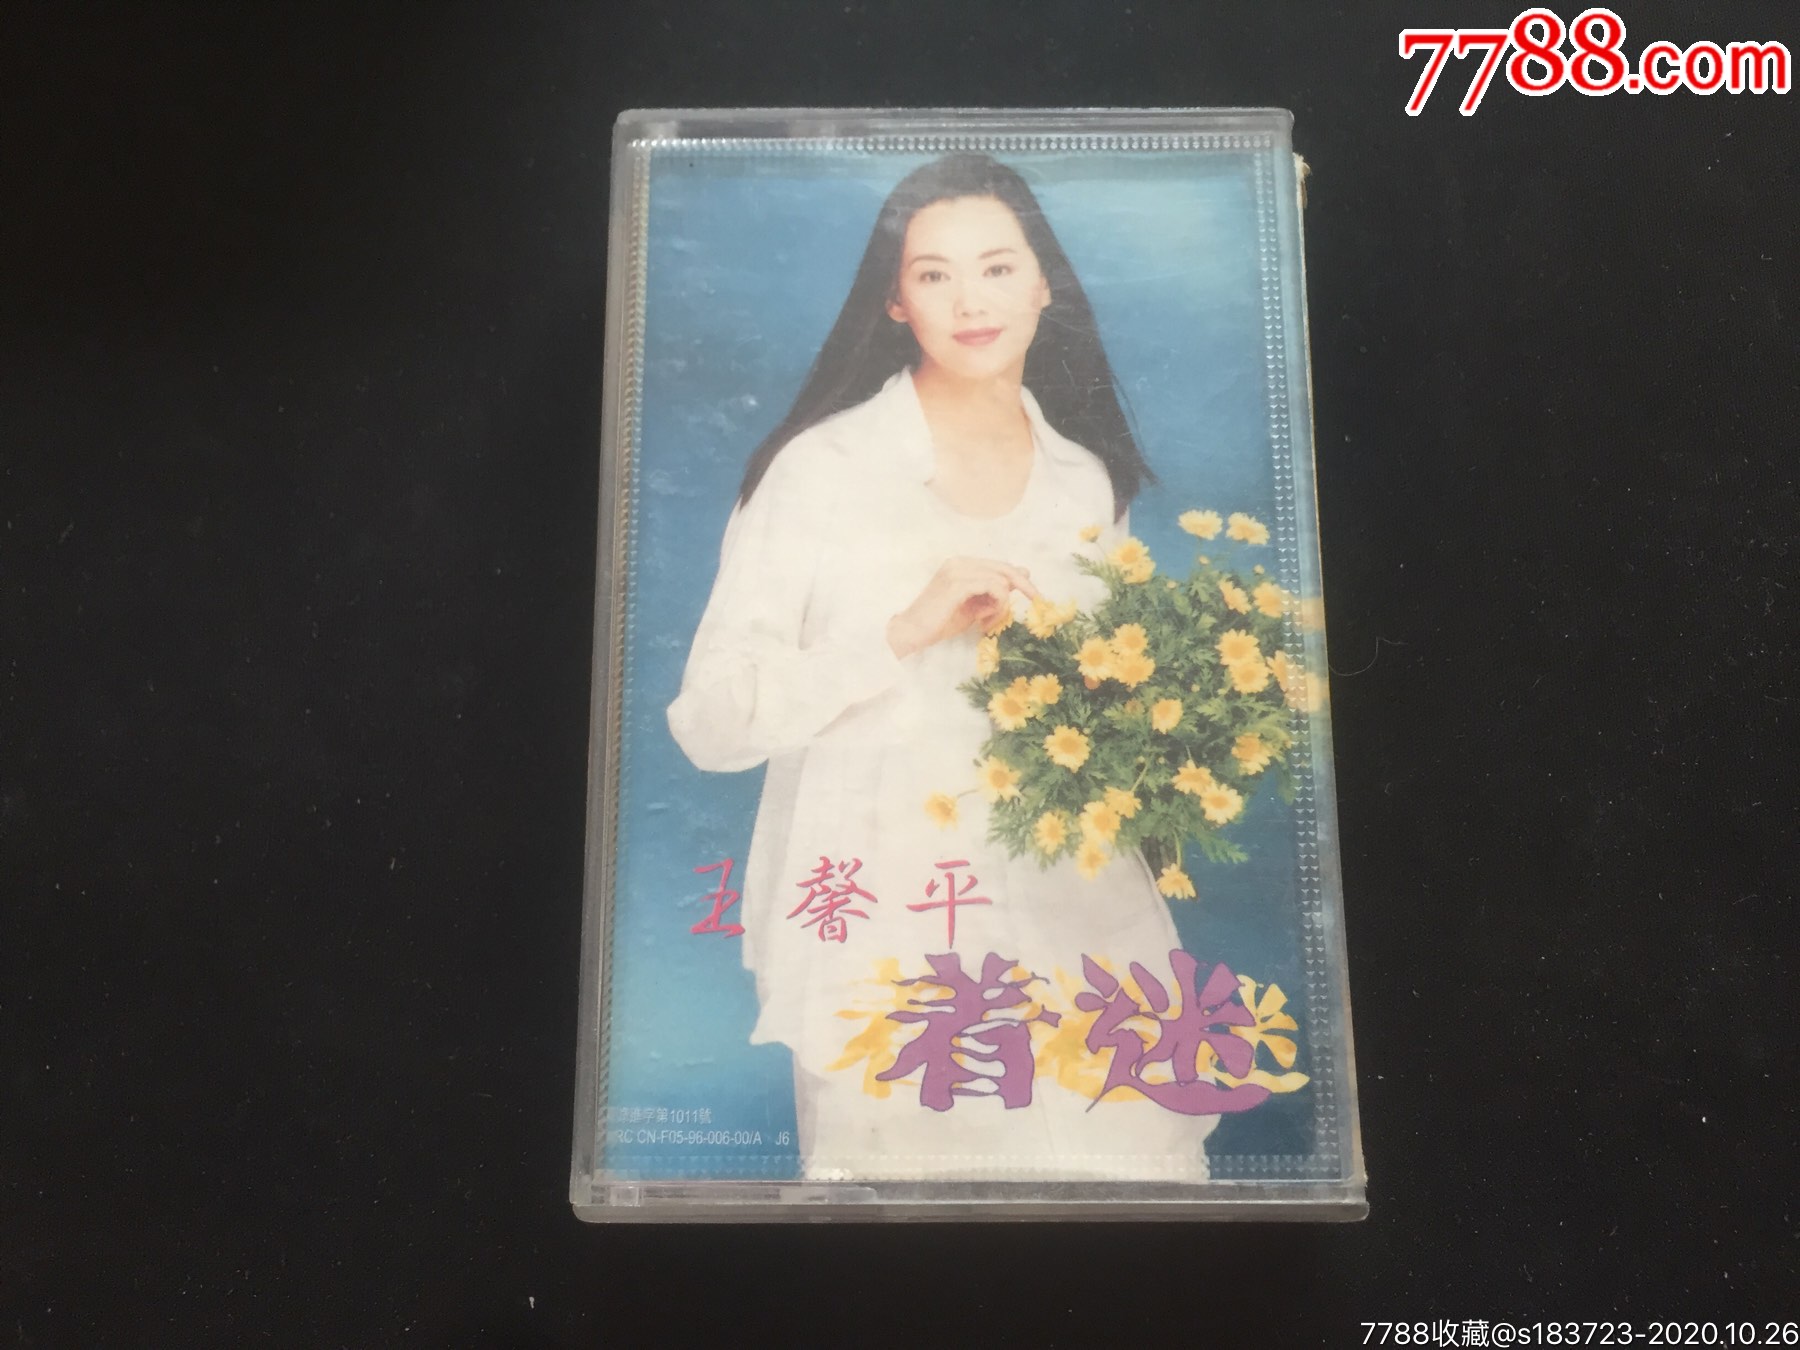 王馨平 - 合集 17CD [WAV/FLAC城通] - 音乐联合国 - 日文老歌论坛 - Powered by Discuz!